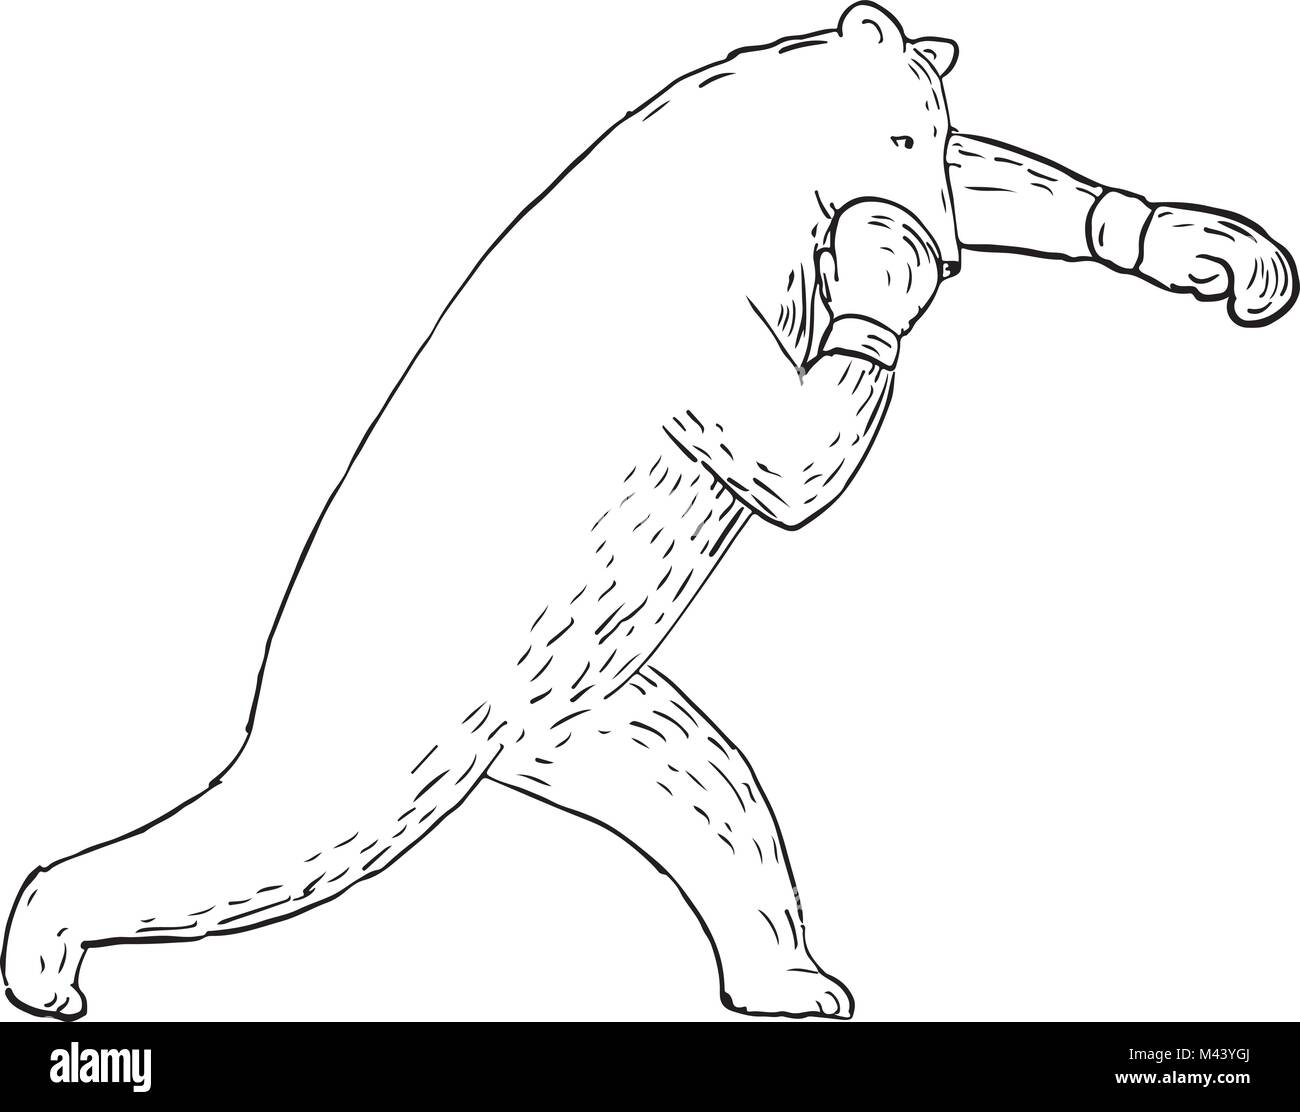 Zeichnung Skizze stil Abbildung eines Kodiak Bären, Grizzly- oder Braunbär Werfen einer linken geraden Schlag oder von der Seite gesehen. Stock Vektor